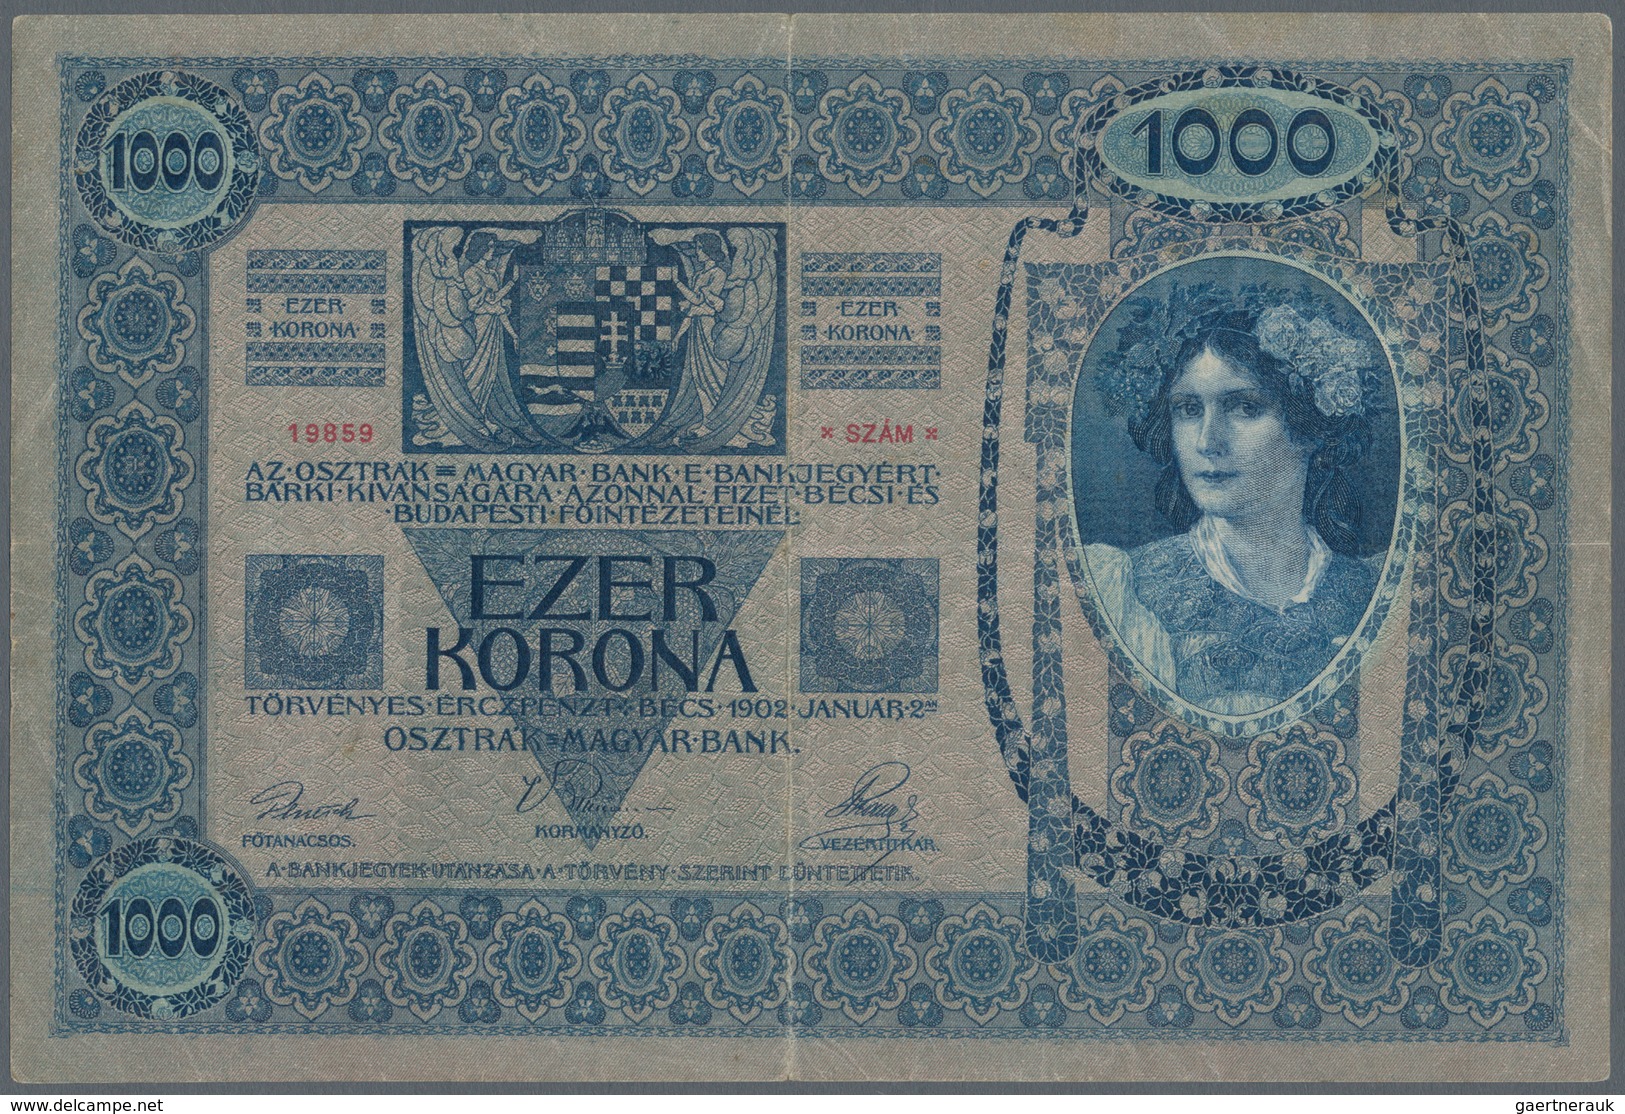 Austria / Österreich: 1000 Kronen 1902 Oesterreichisch-ungarische Bank 02.01.1902 (1919), Revalidati - Oesterreich